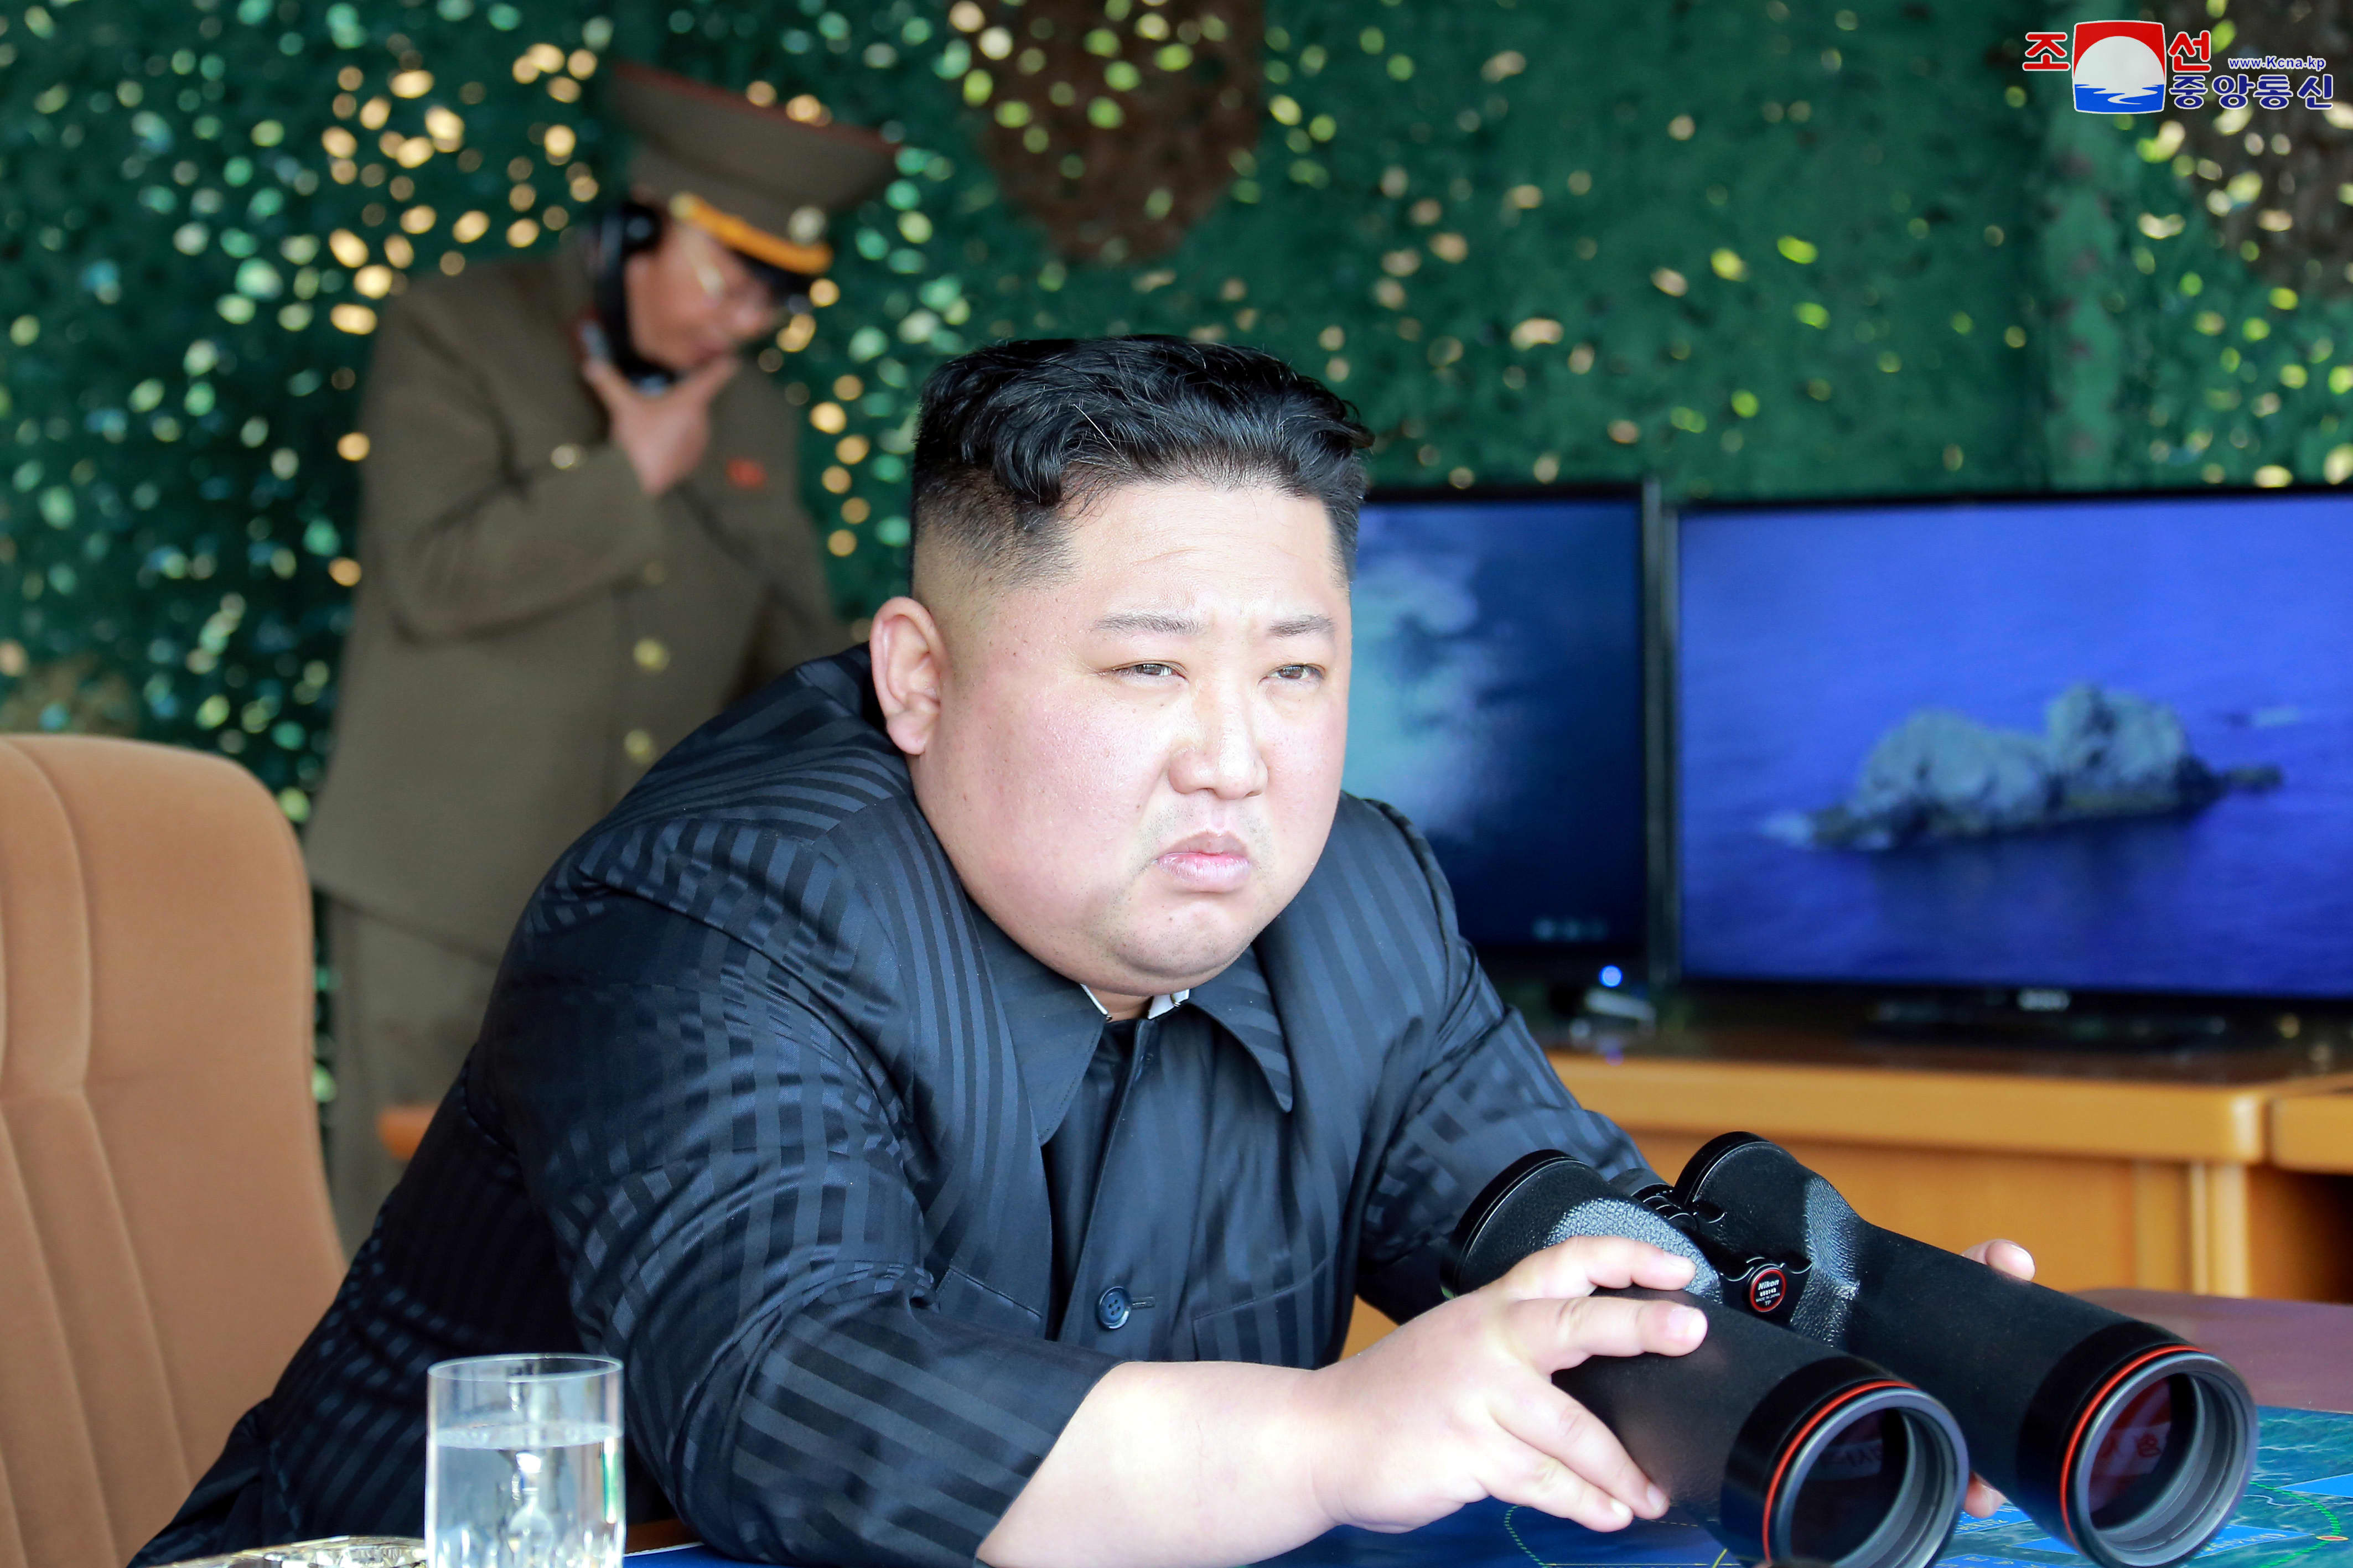 North Korea's Kim Jong Un could be incapacitated, US officials say